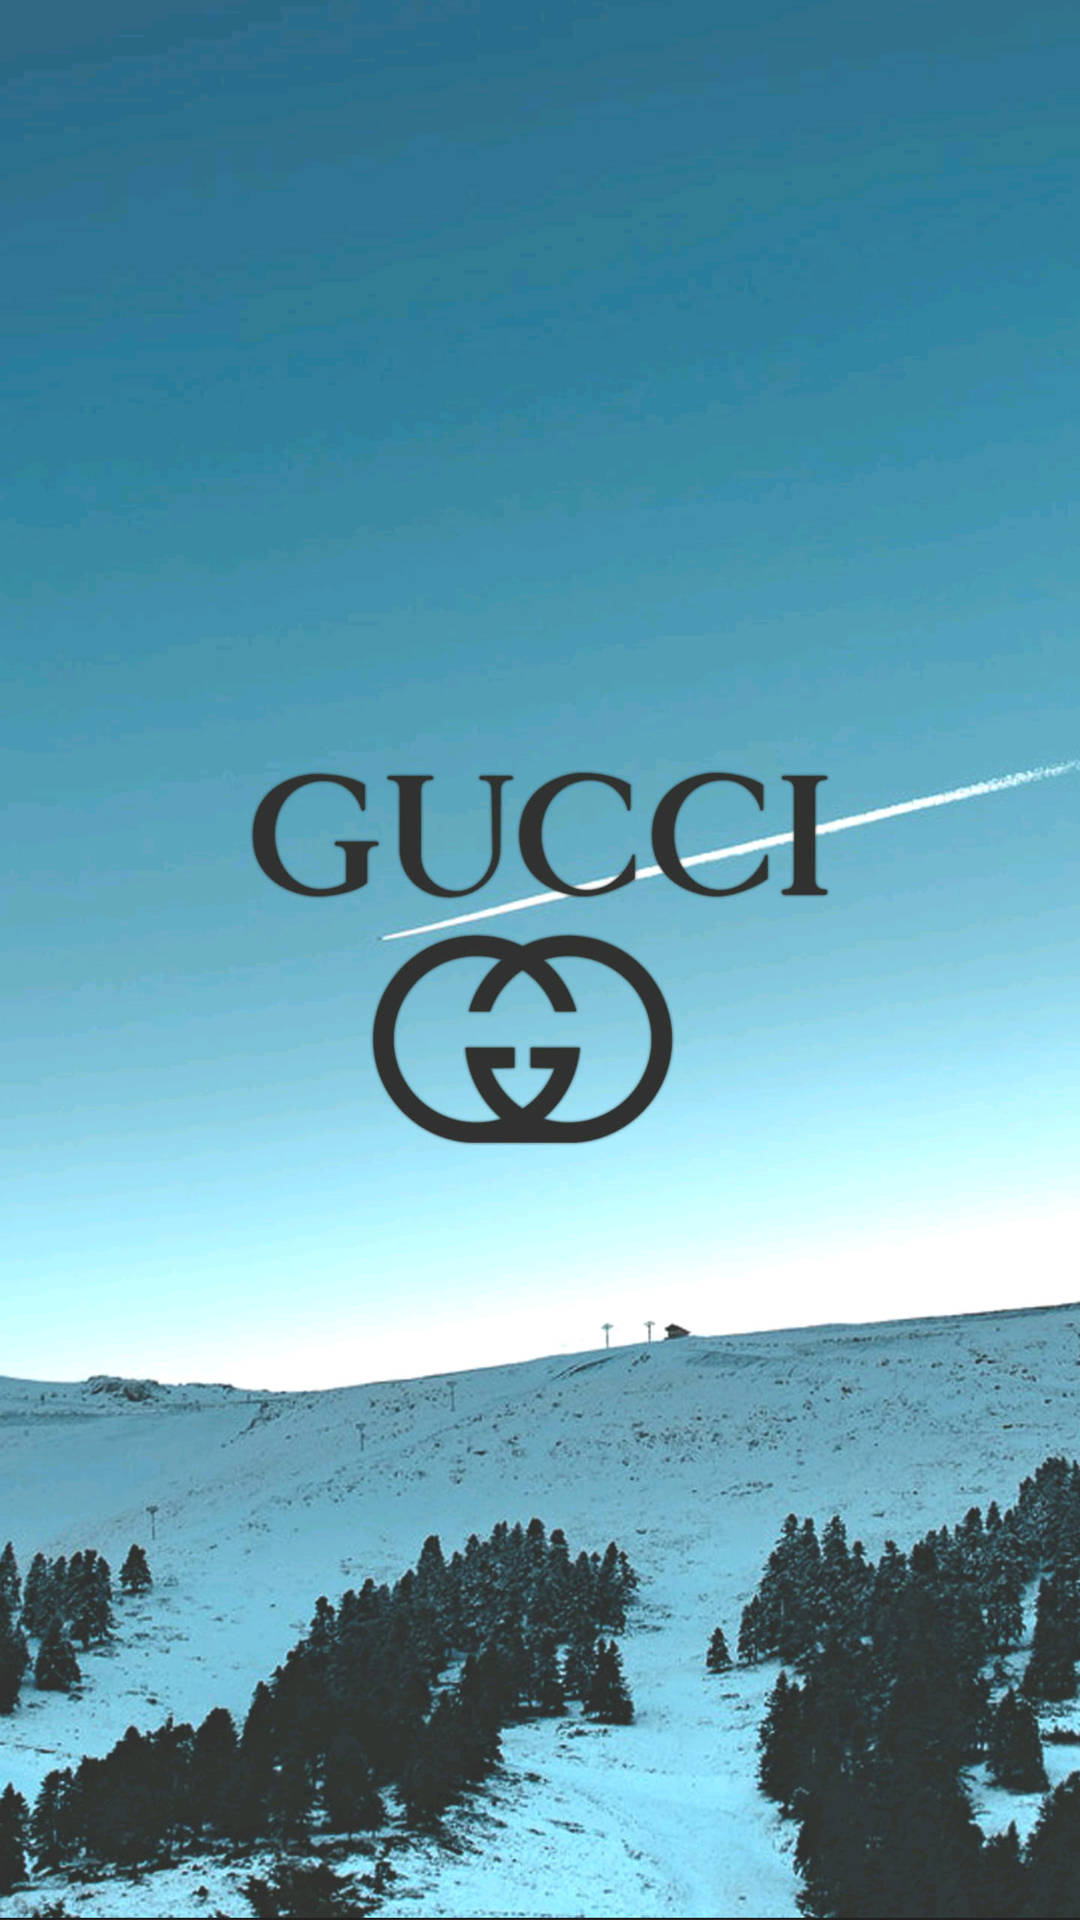 Fondode Pantalla De Gucci Con Nieve Para Iphone. Fondo de pantalla